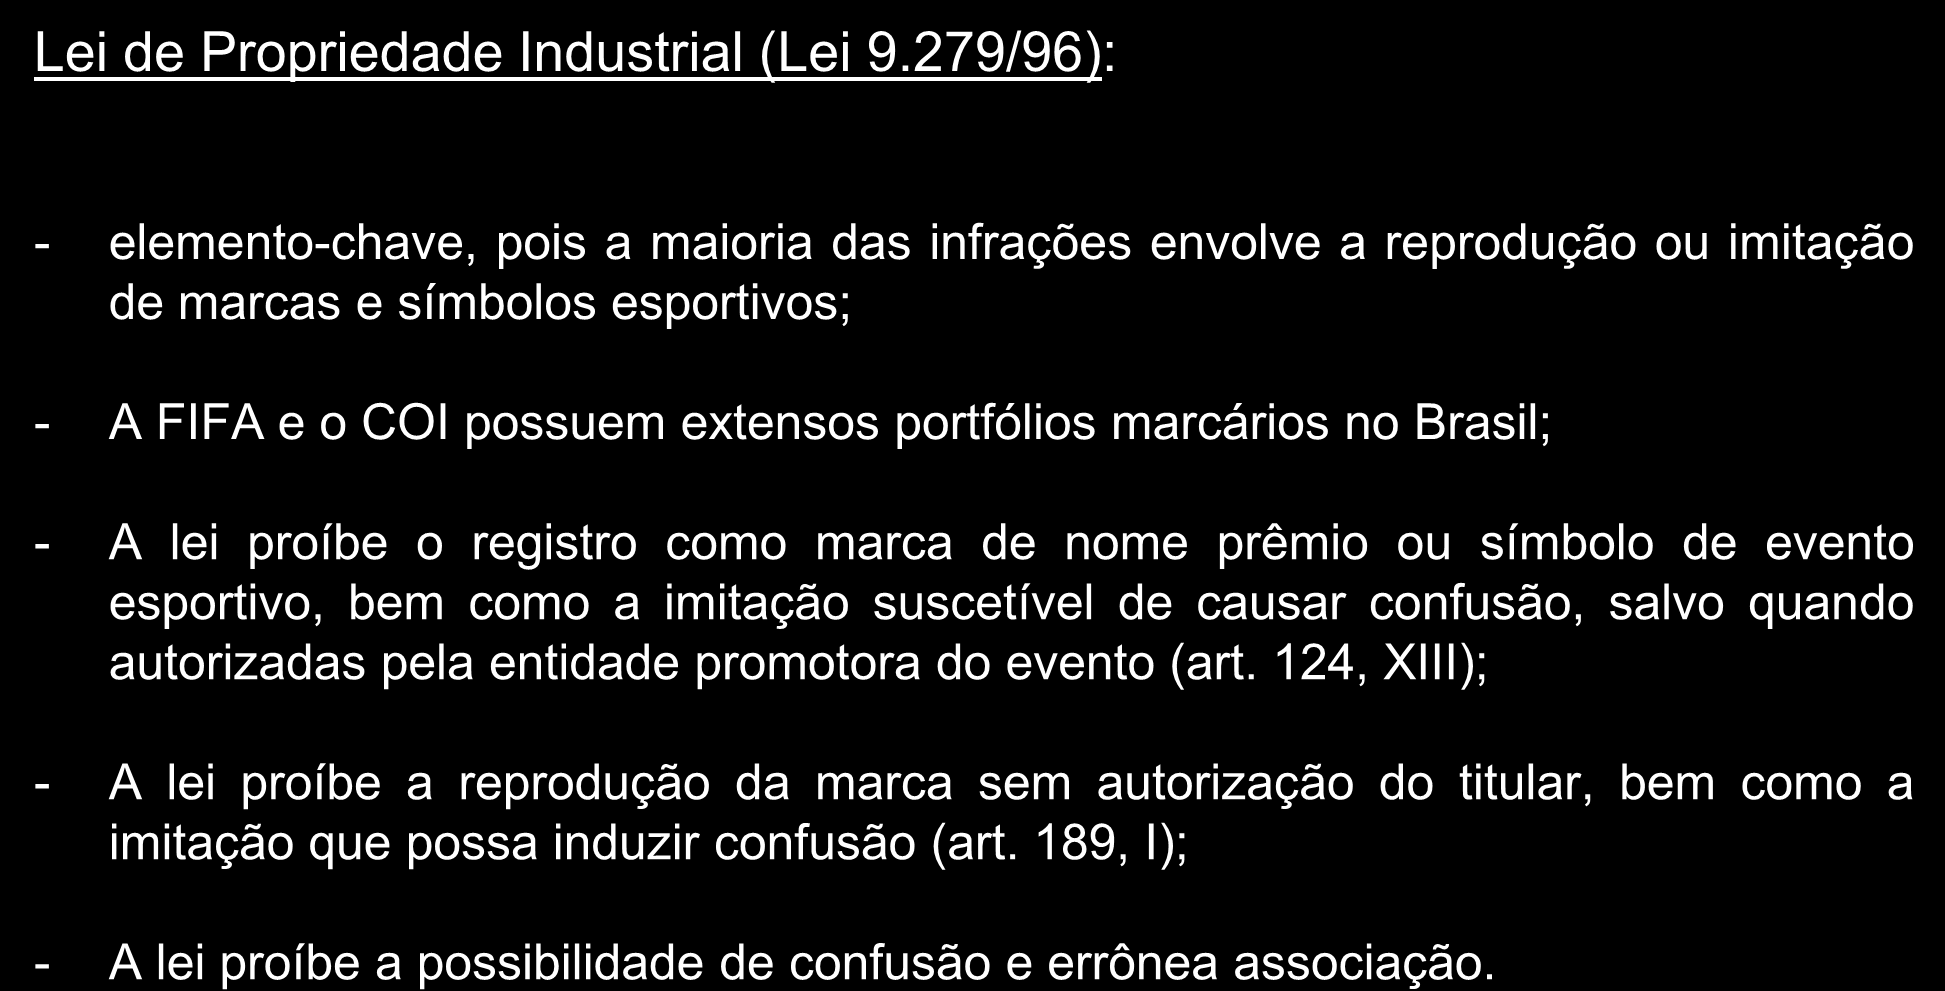 Análise do ordenamento jurídico Lei de Propriedade Industrial (Lei 9.